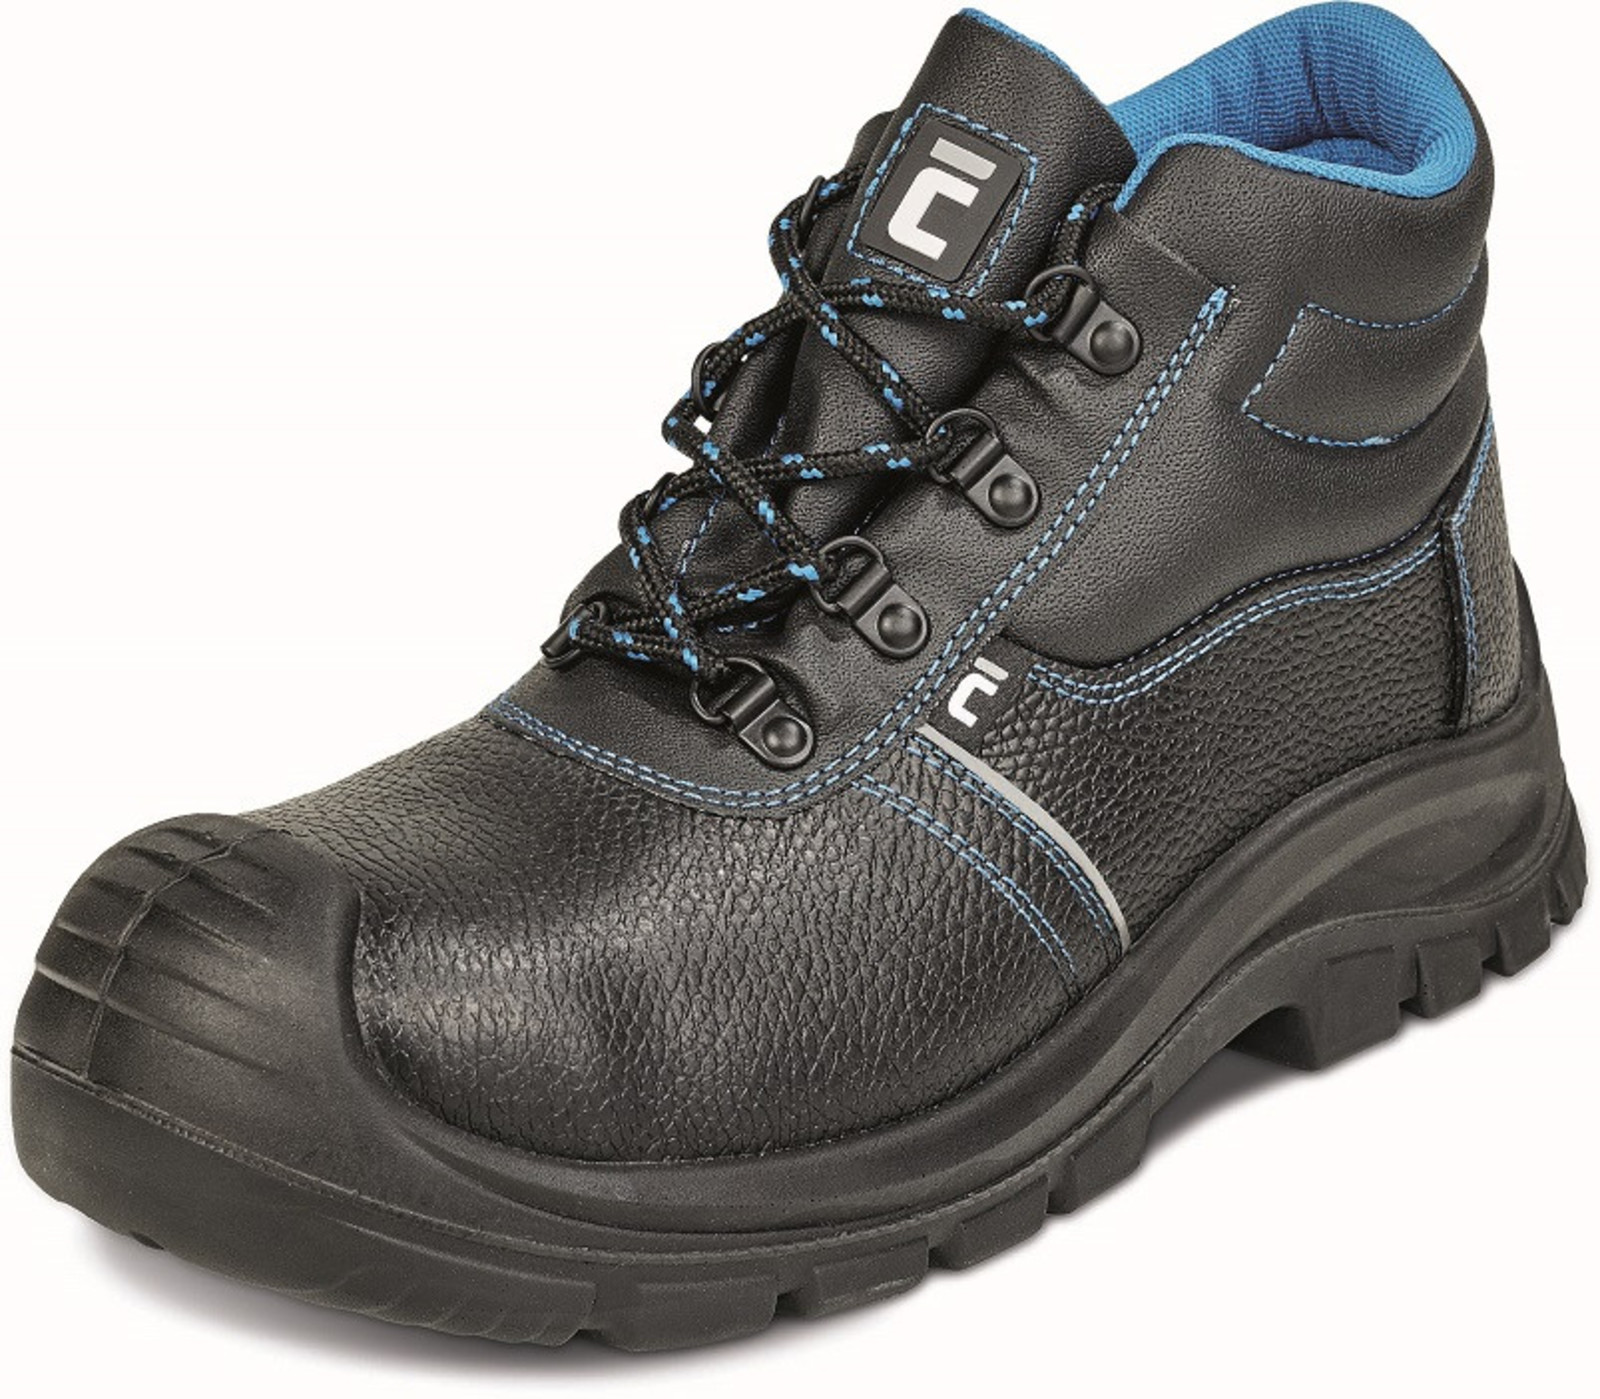 Bezpečnostná obuv Raven XT S3 - veľkosť: 39, farba: čierna